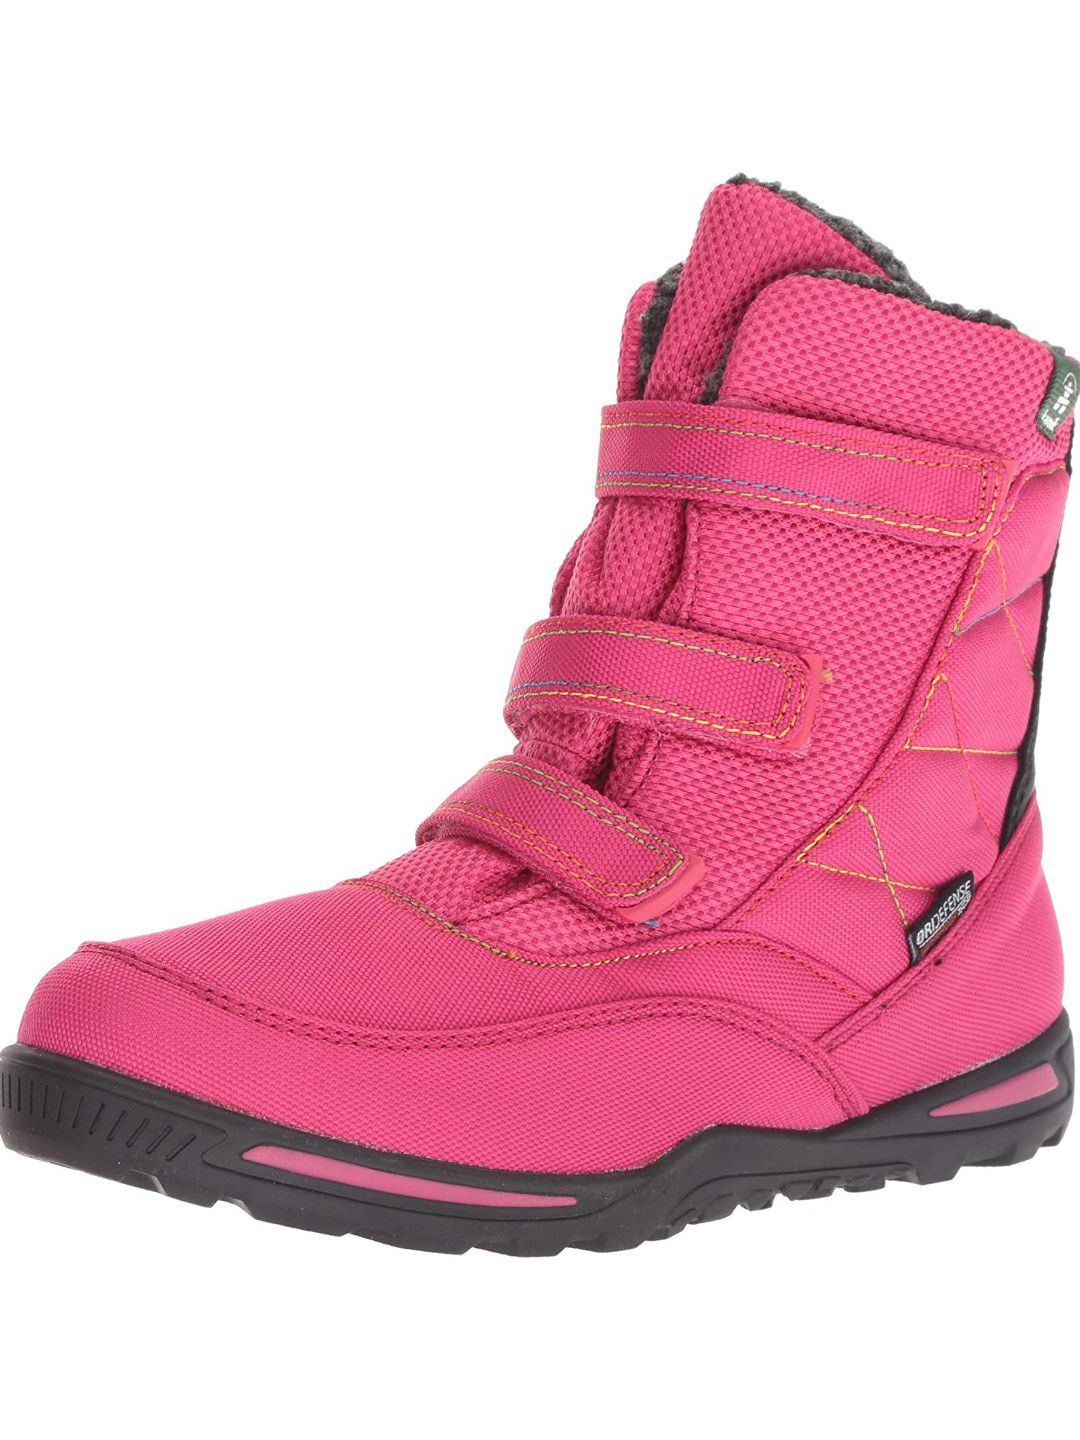 Kamik Kids' Hayden Snow Boot 6(M) Bright Rose